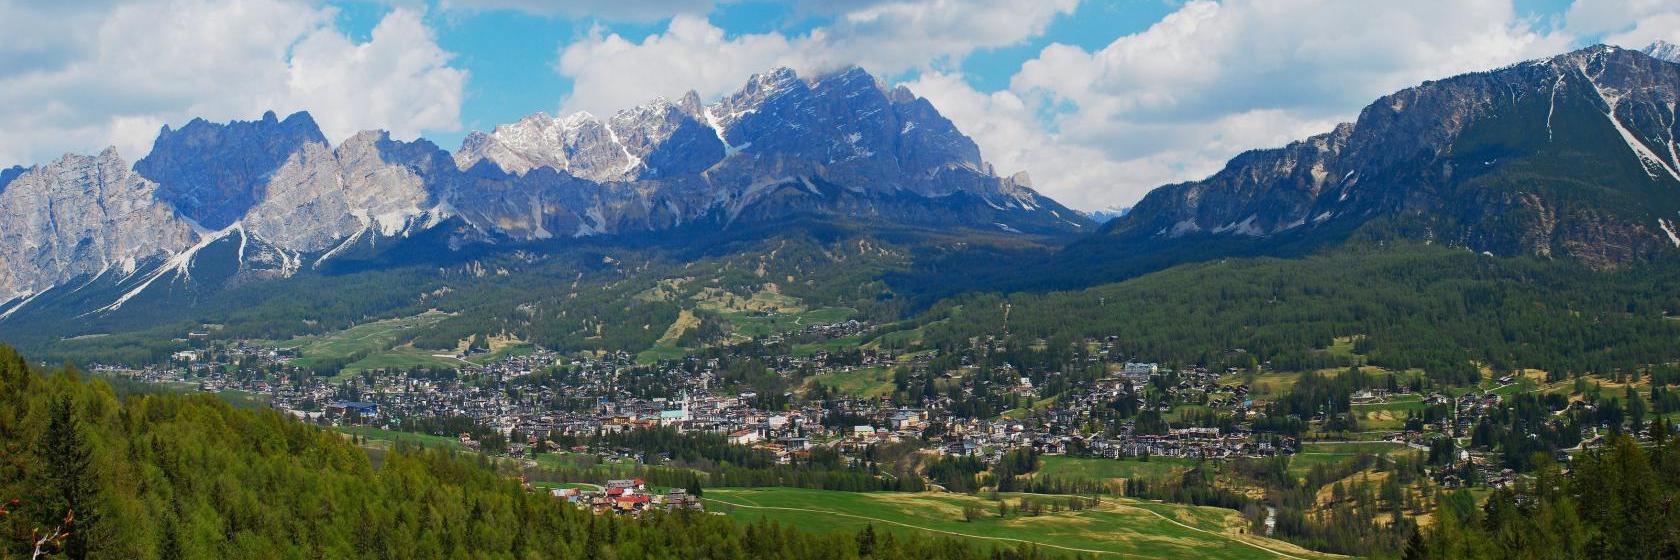 180 hotel a Cortina dʼAmpezzo, Italia.